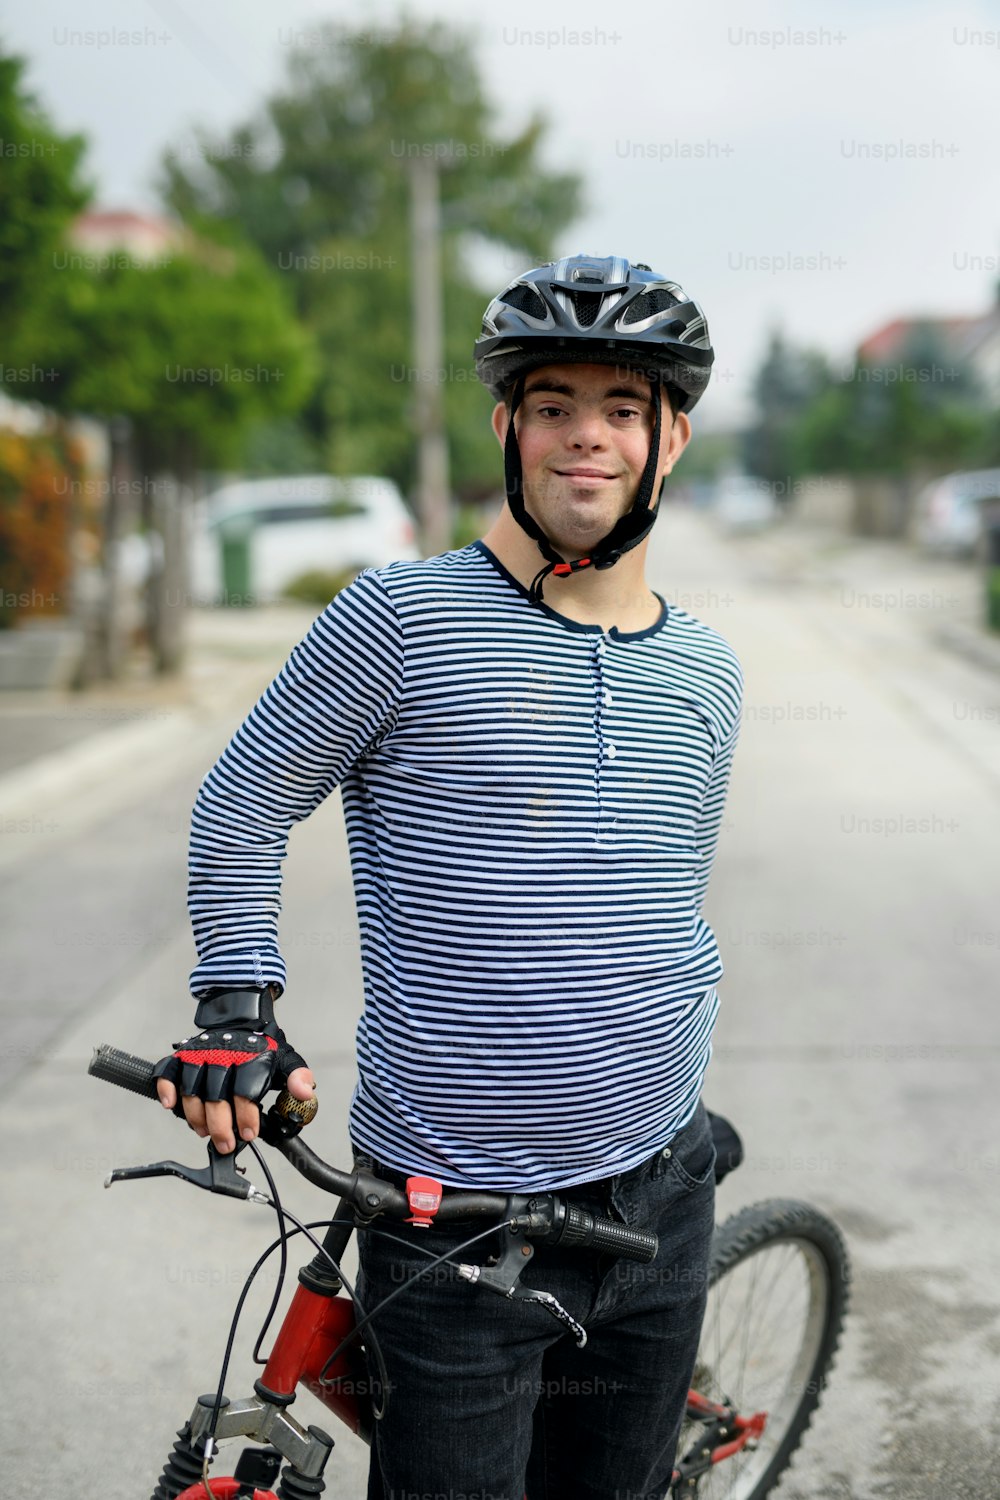 Ritratto dell'uomo adulto con sindrome di down con bicicletta in piedi all'aperto sulla strada, guardando la macchina fotografica.